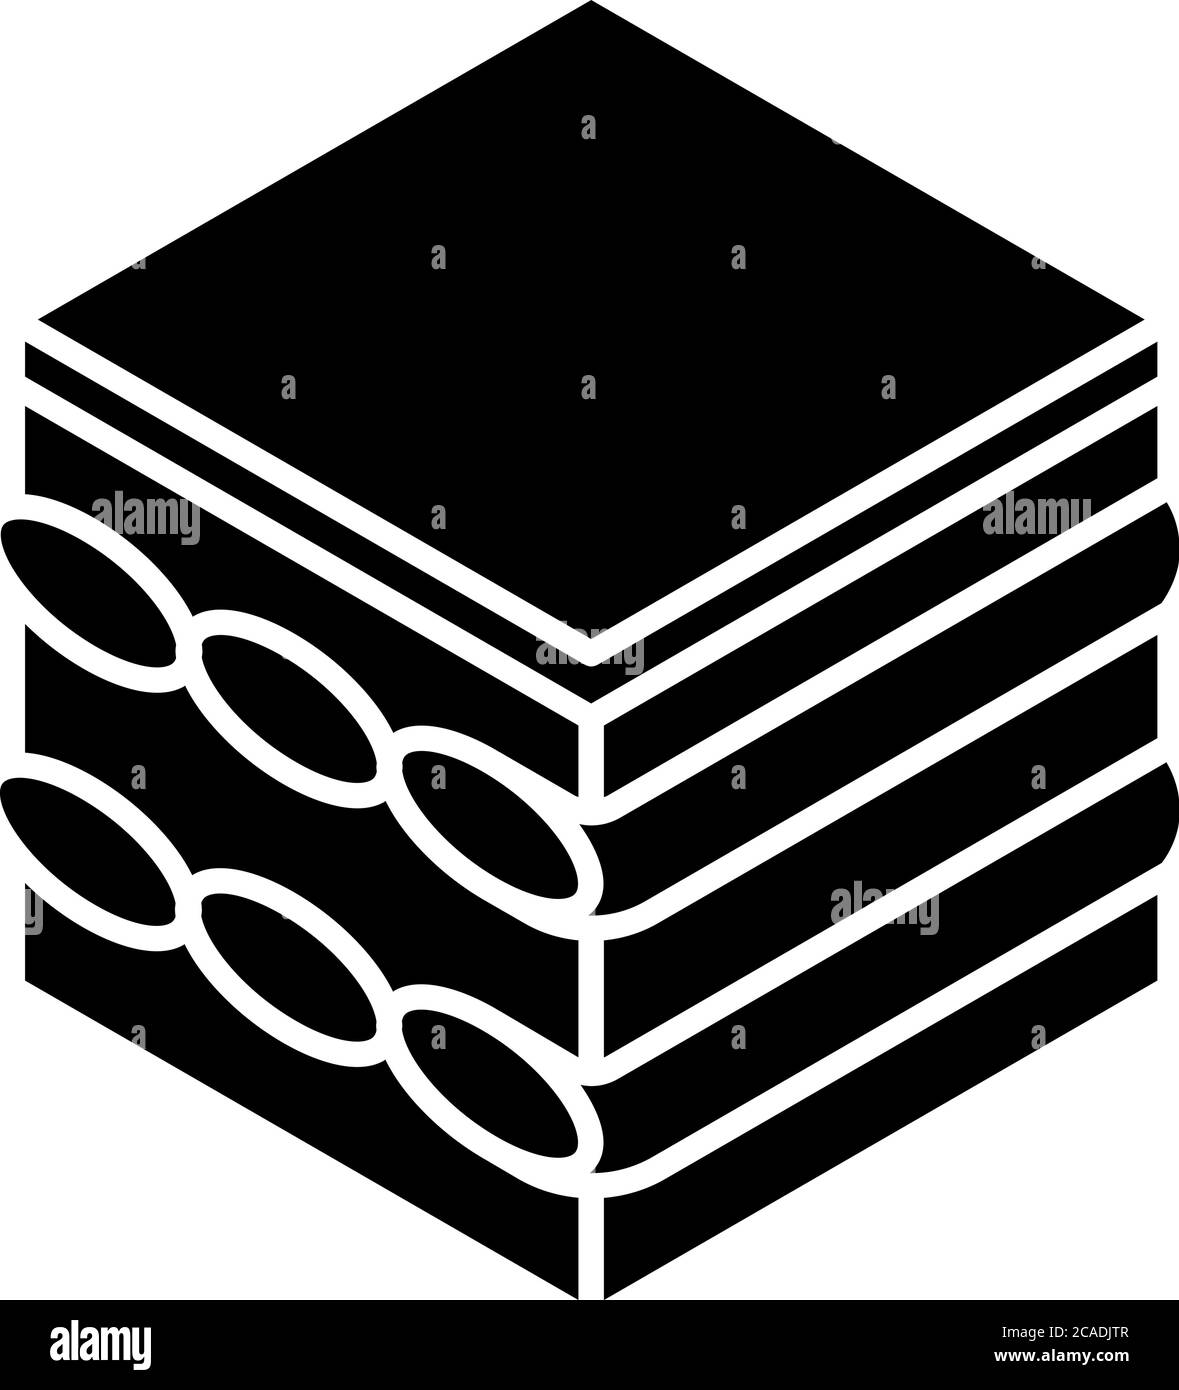 Tiramisu schwarzes Glyphensymbol. Dessert mit Kaffeegeschmack. Kuchen mit Frischkäse und Kakao. Traditionelle italienische Küche. Europäische Süßigkeiten. Silhouette Symbol Stock Vektor